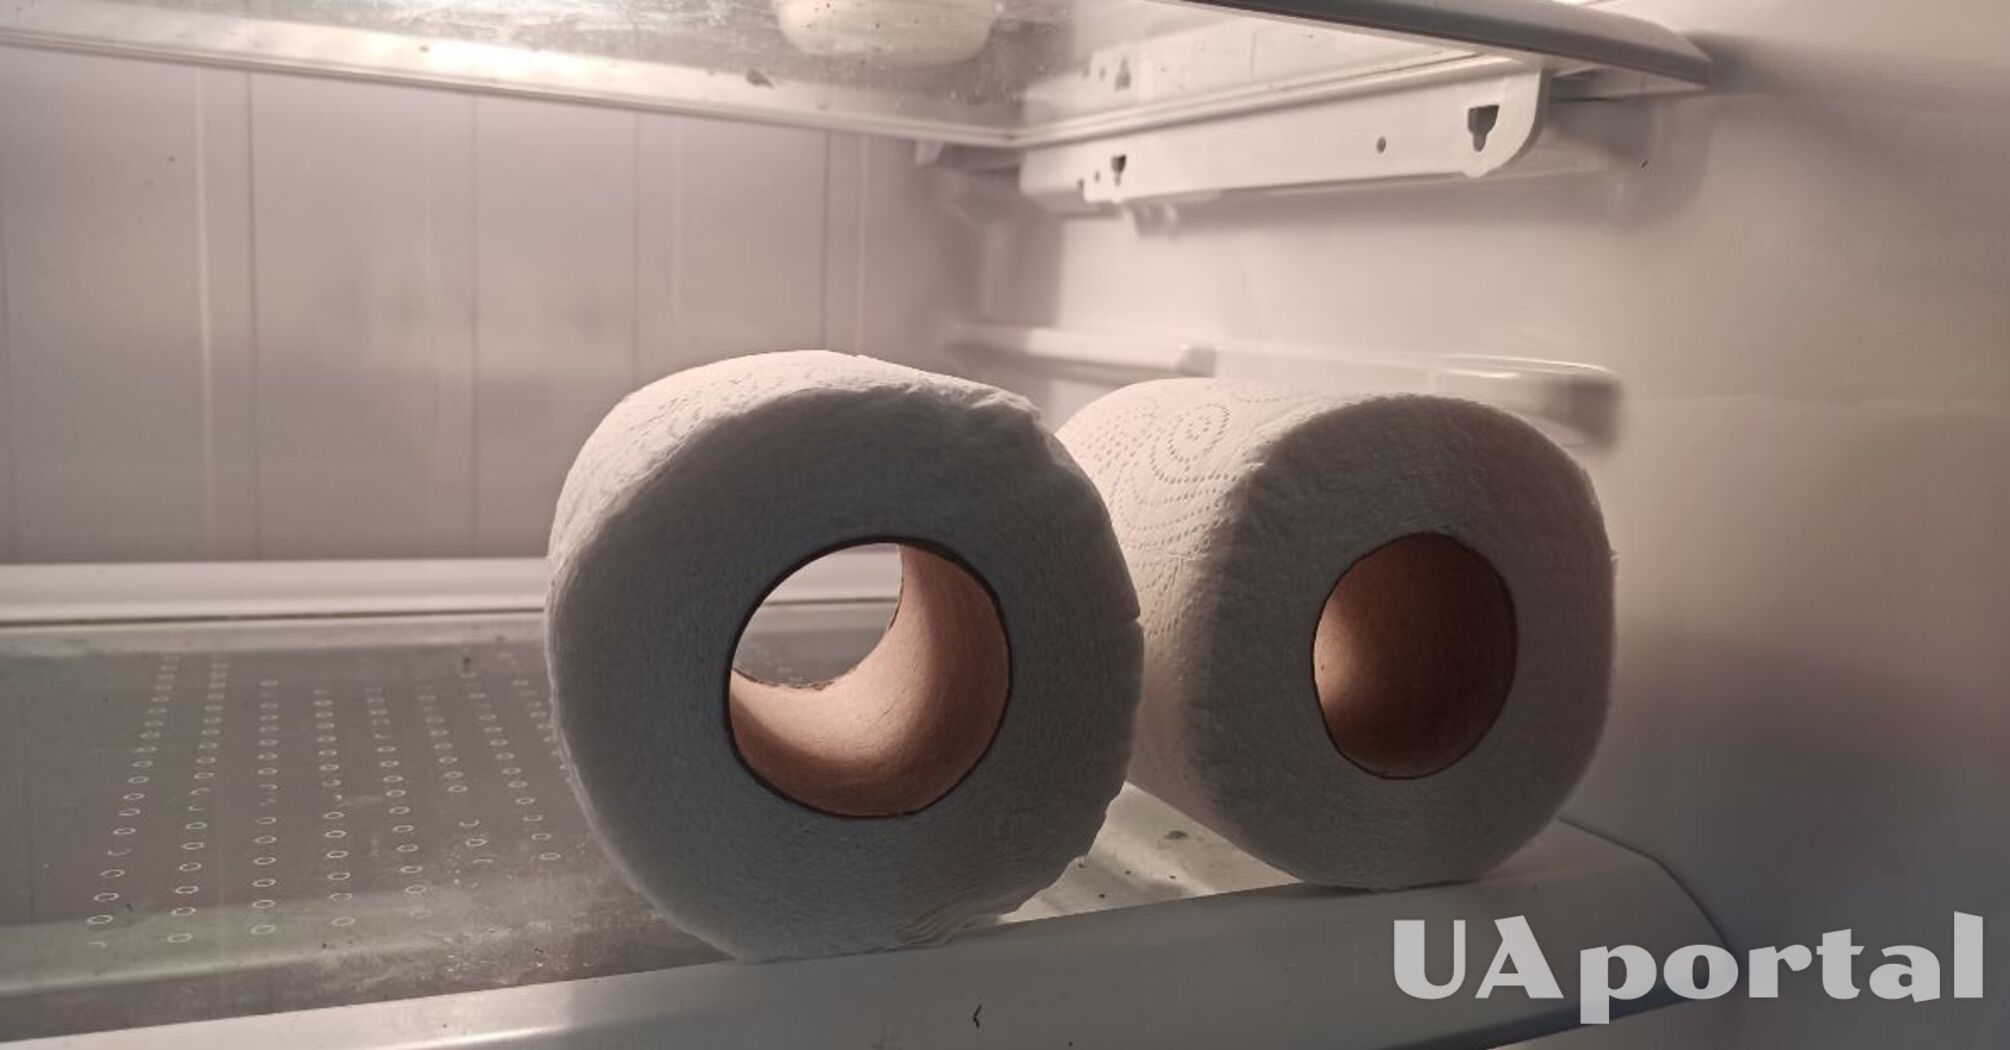 Для чого досвідчені господарі кладуть в холодильник рулон туалетного паперу